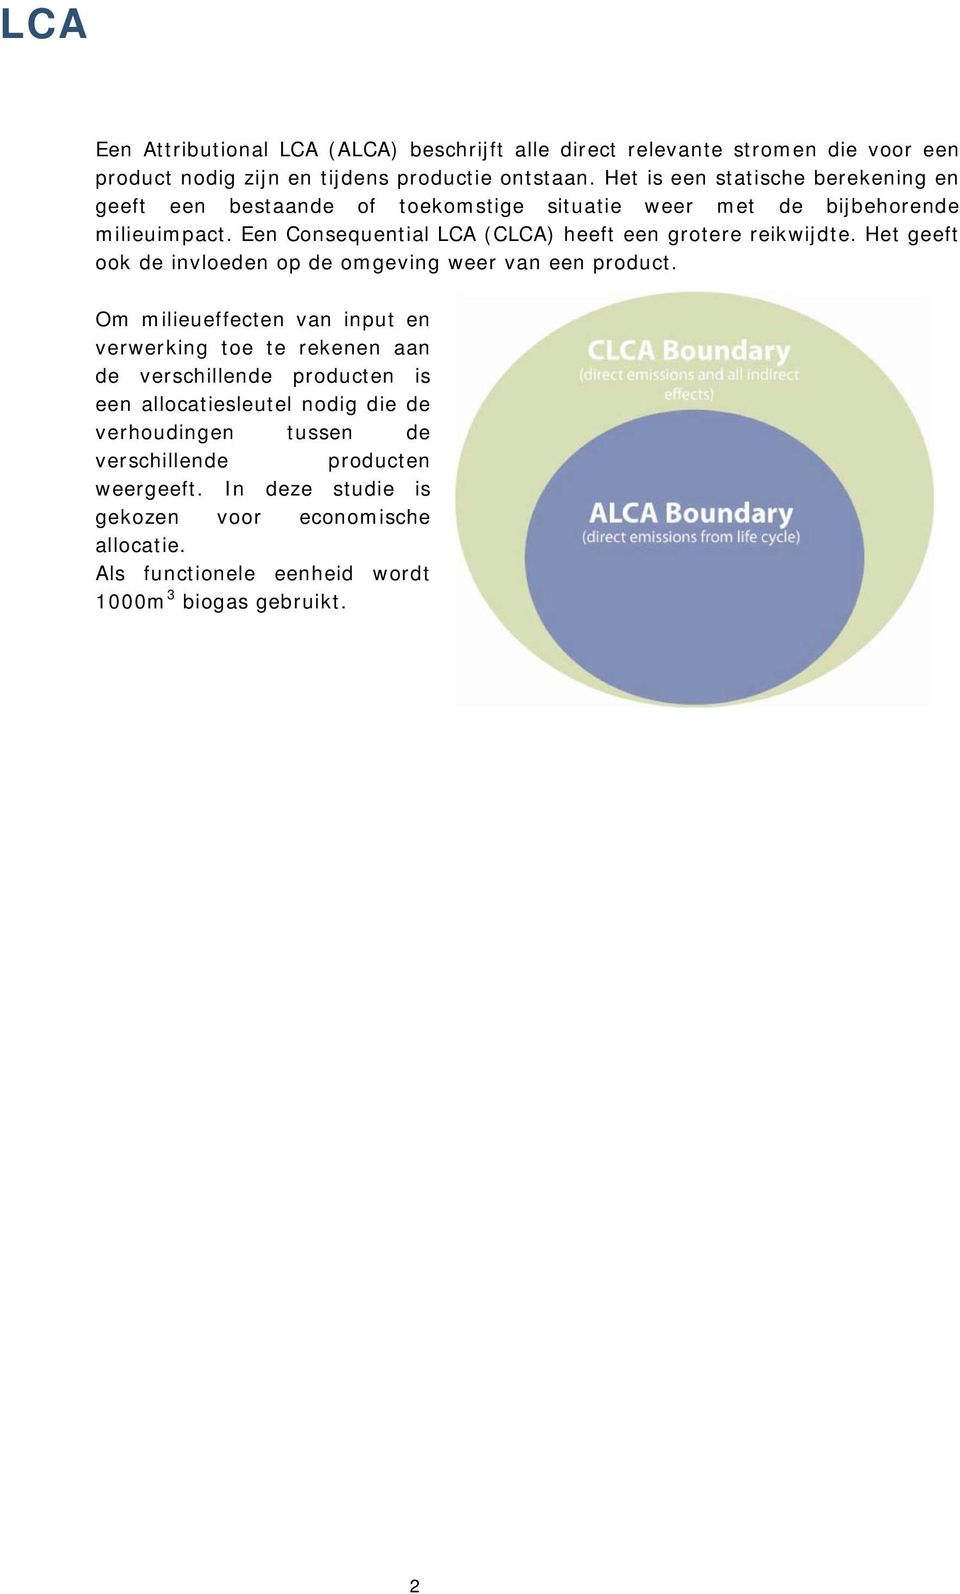 Een Consequential LCA (CLCA) heeft een grotere reikwijdte. Het geeft ook de invloeden op de omgeving weer van een product.